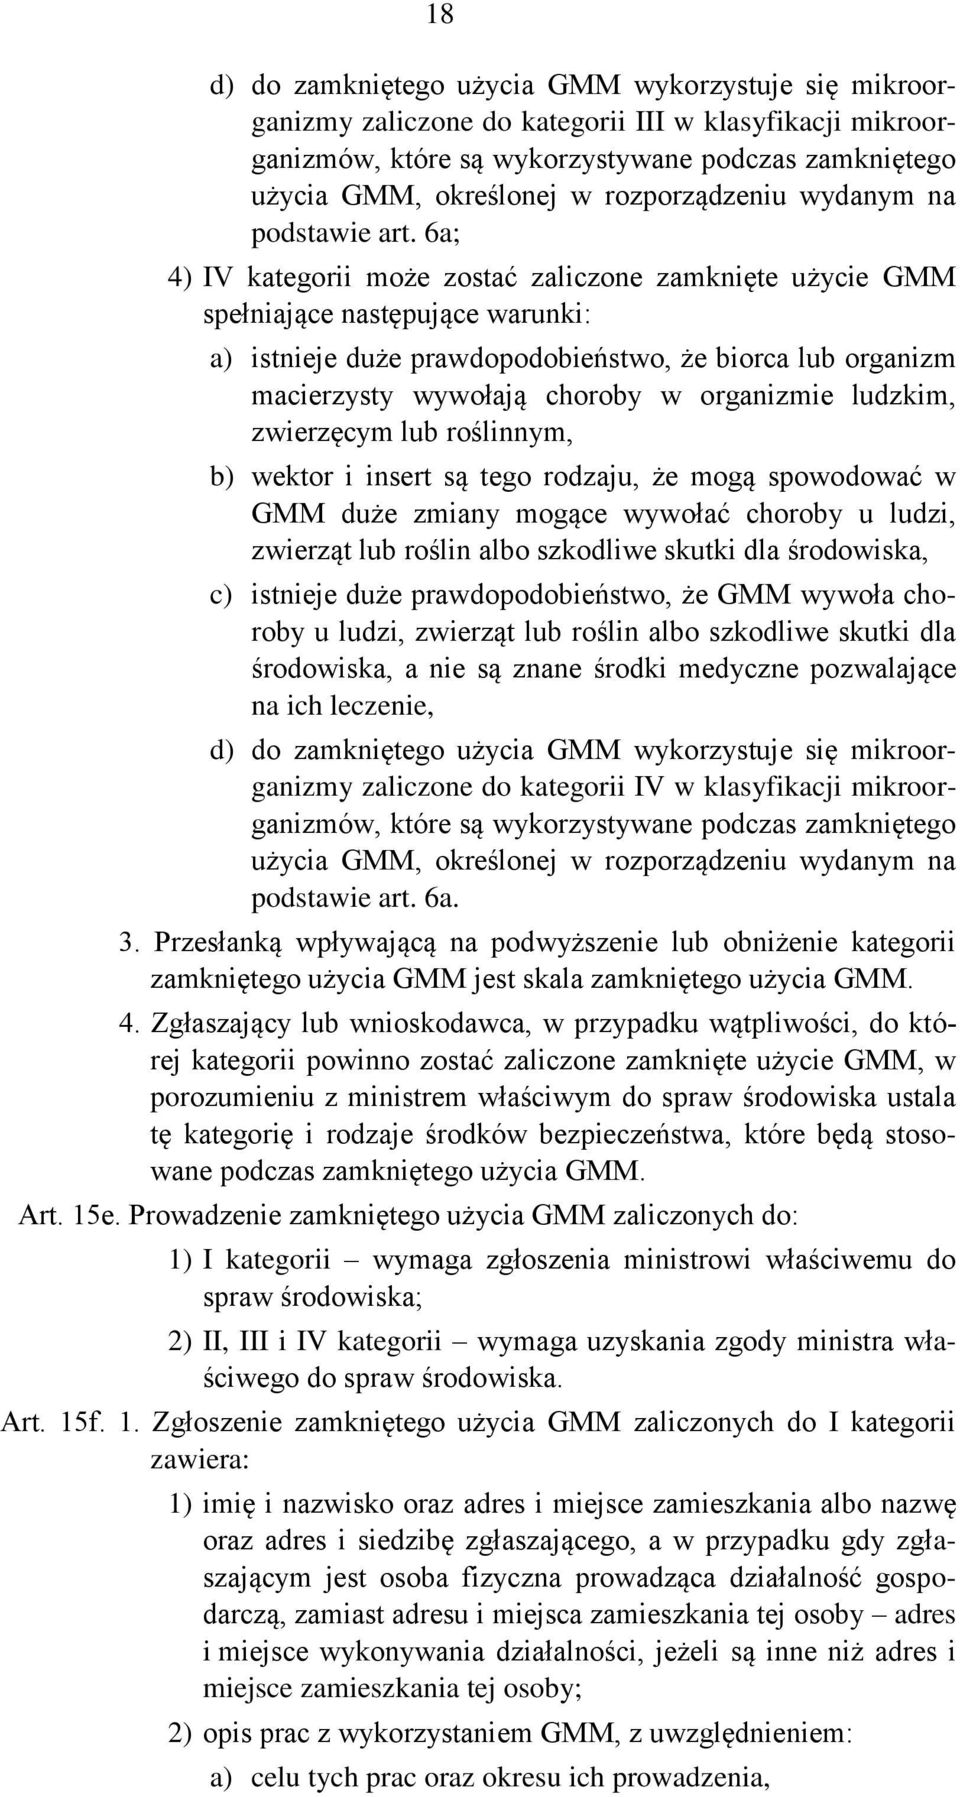 6a; 4) IV kategorii może zostać zaliczone zamknięte użycie GMM spełniające następujące warunki: a) istnieje duże prawdopodobieństwo, że biorca lub organizm macierzysty wywołają choroby w organizmie